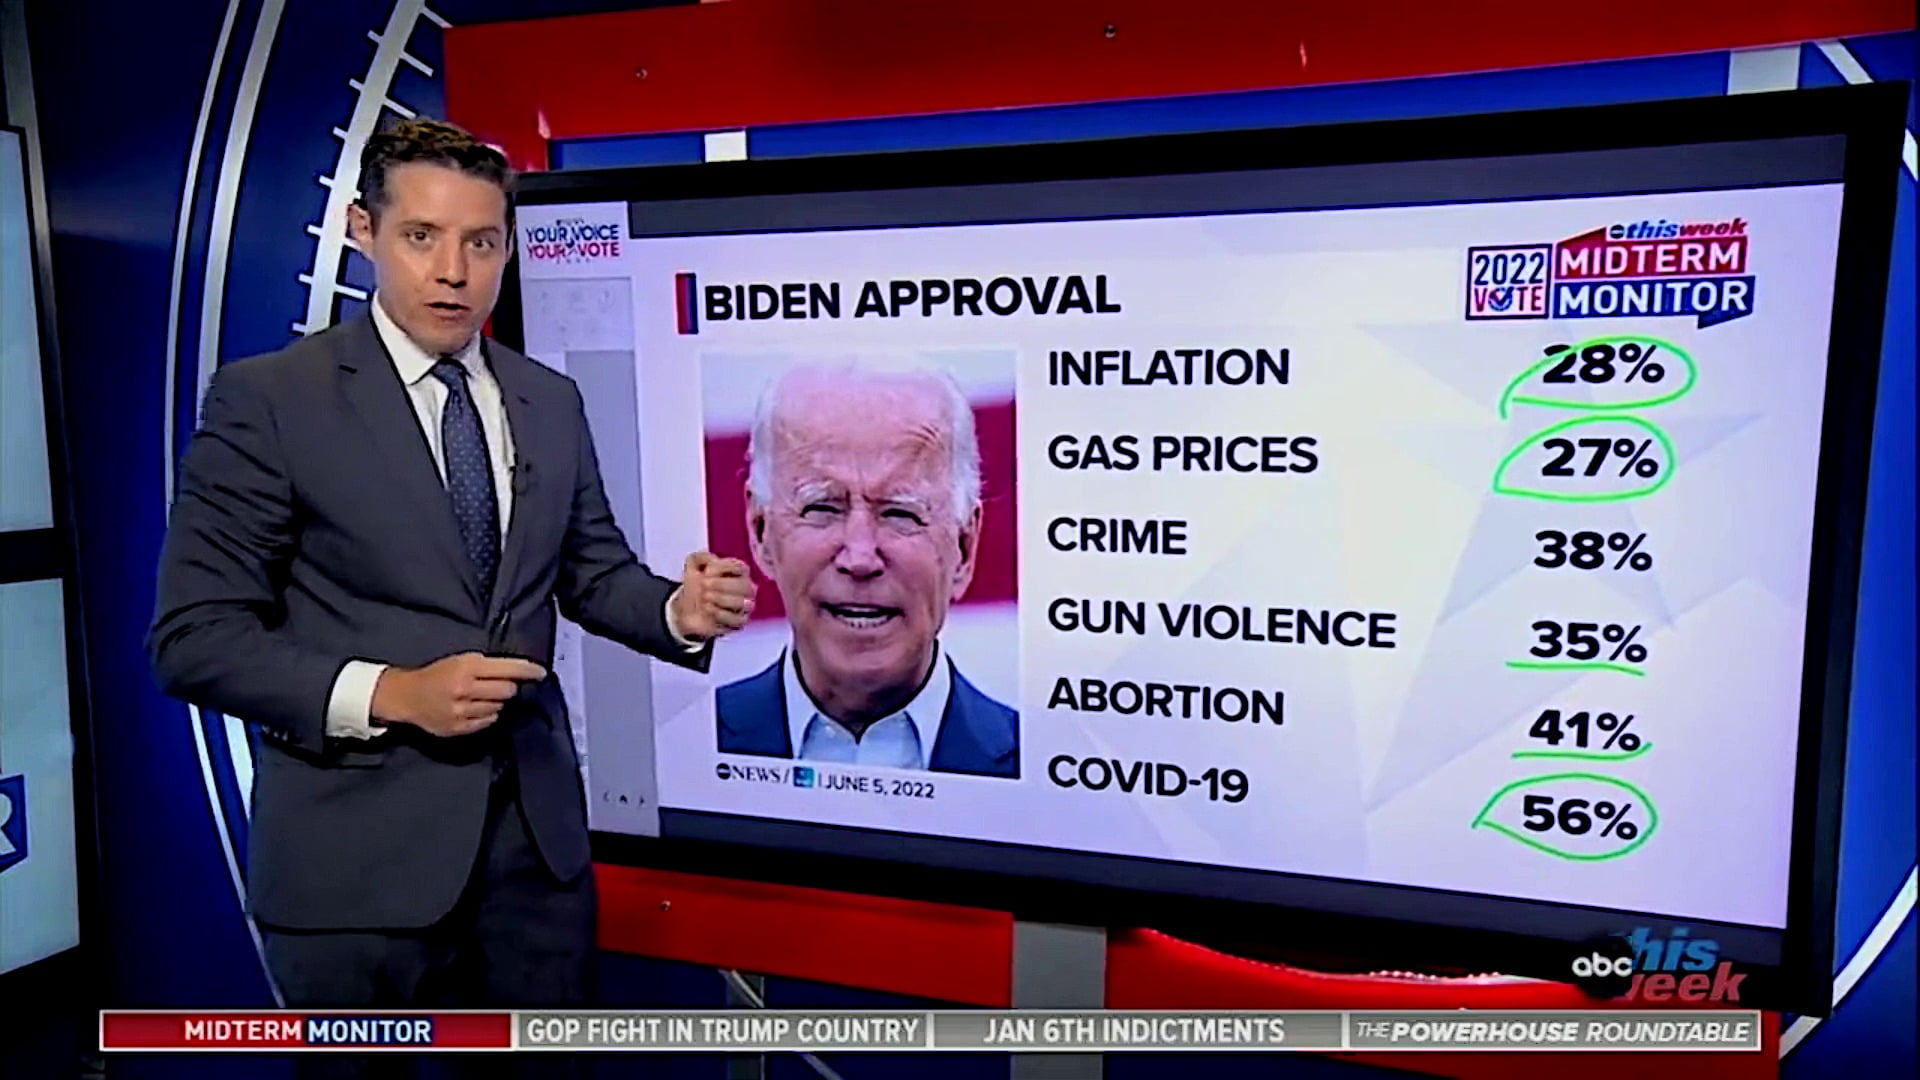 Biden approval is upside down in all major categories...